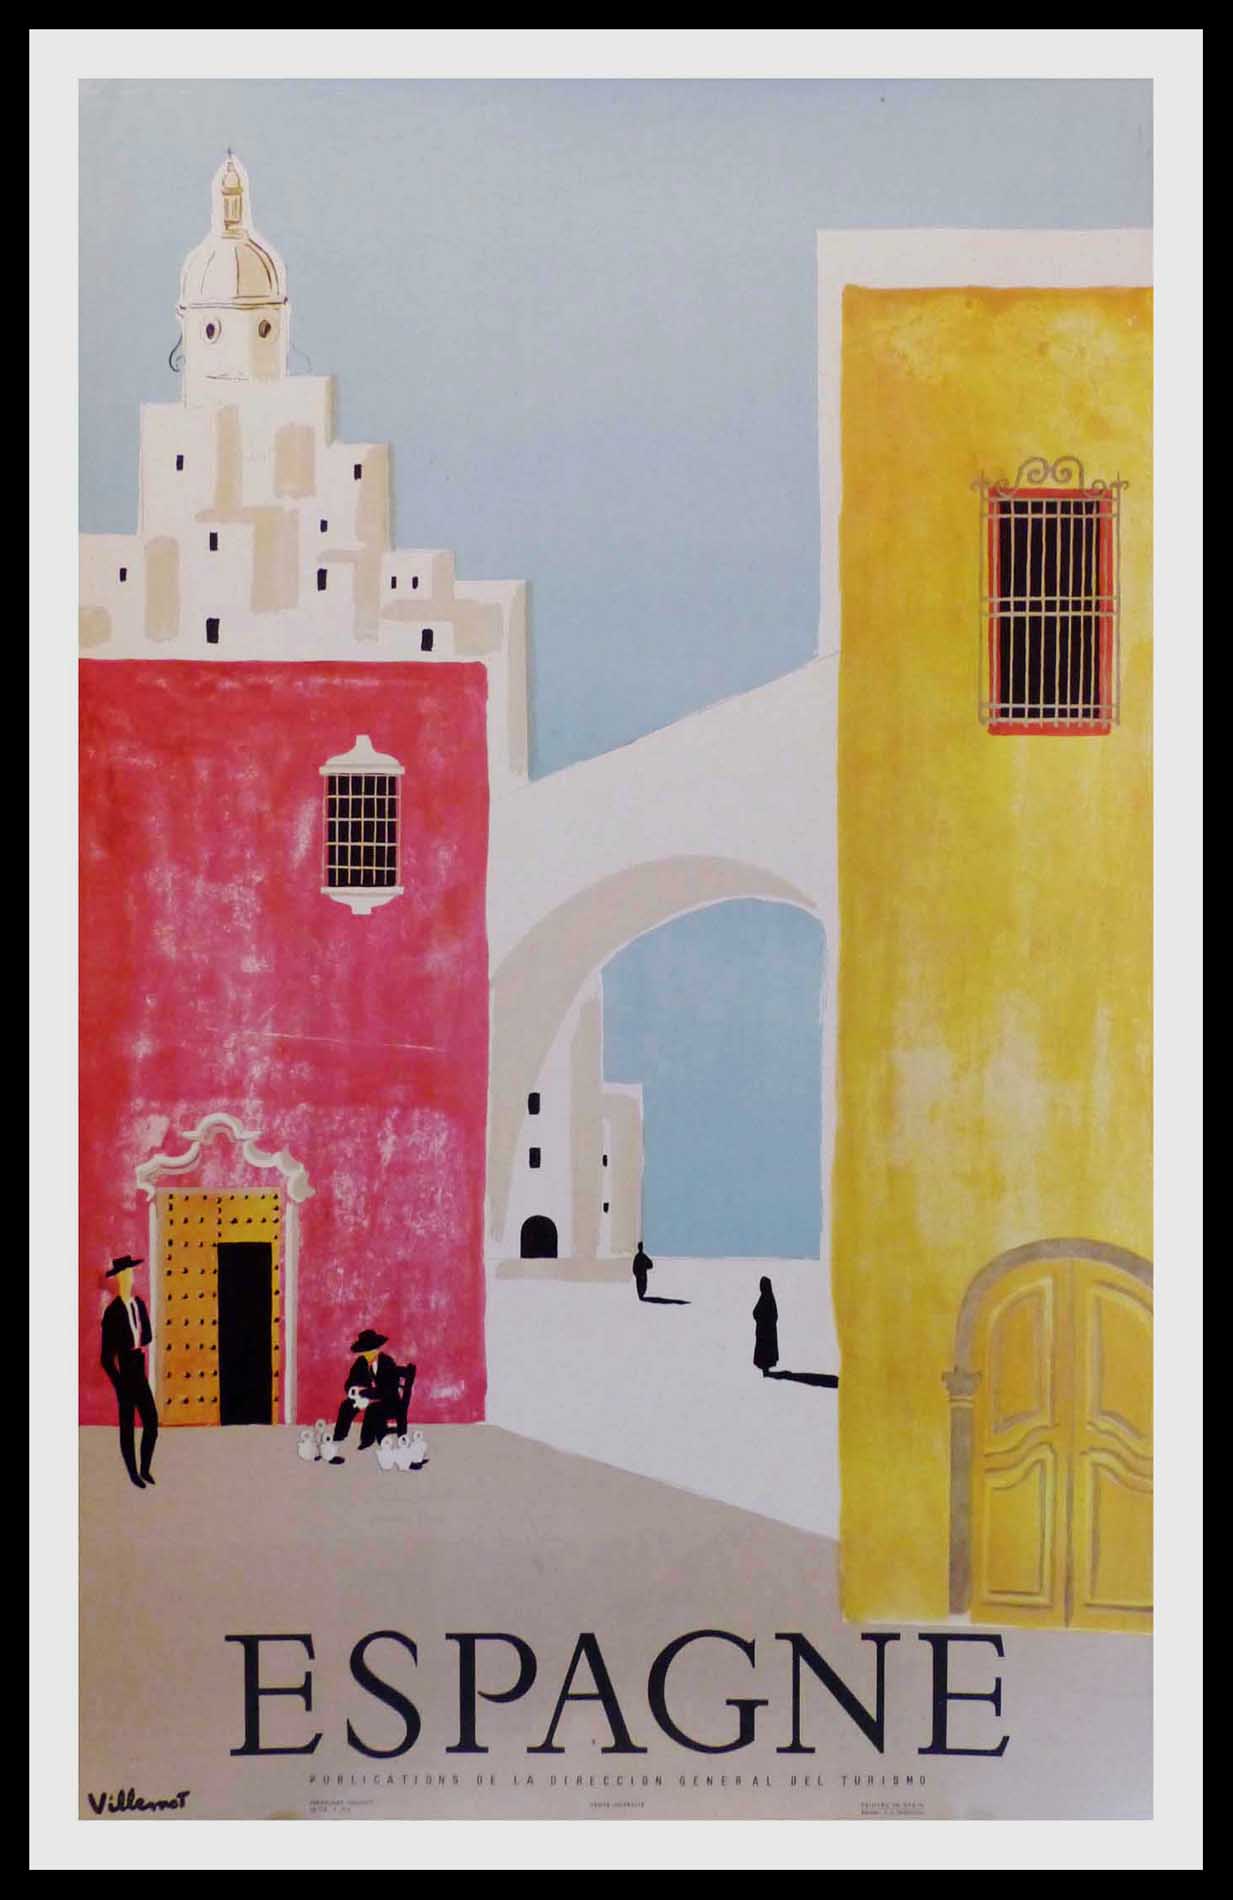 (alt="original vintage travel poster, ESPAGNE, Bernard Villemot signed in the plate and printed by Rieusset Barcelona 1958")